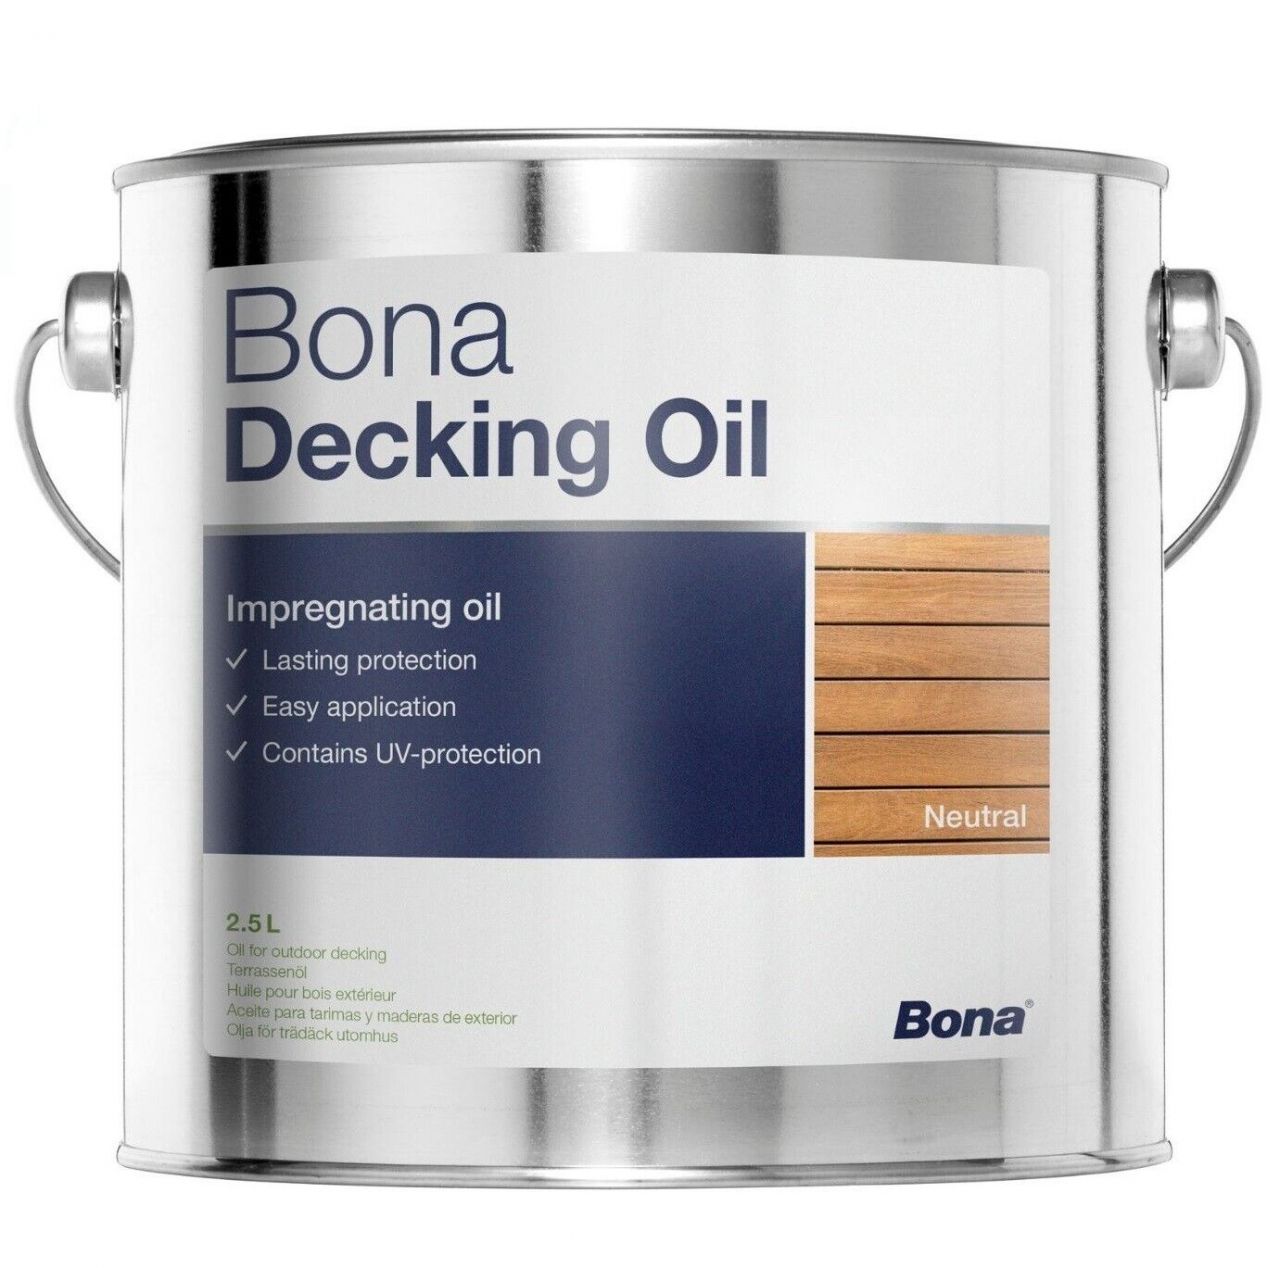 Bona Decking Oil Neutral kültéri teraszolaj 2,5 liter